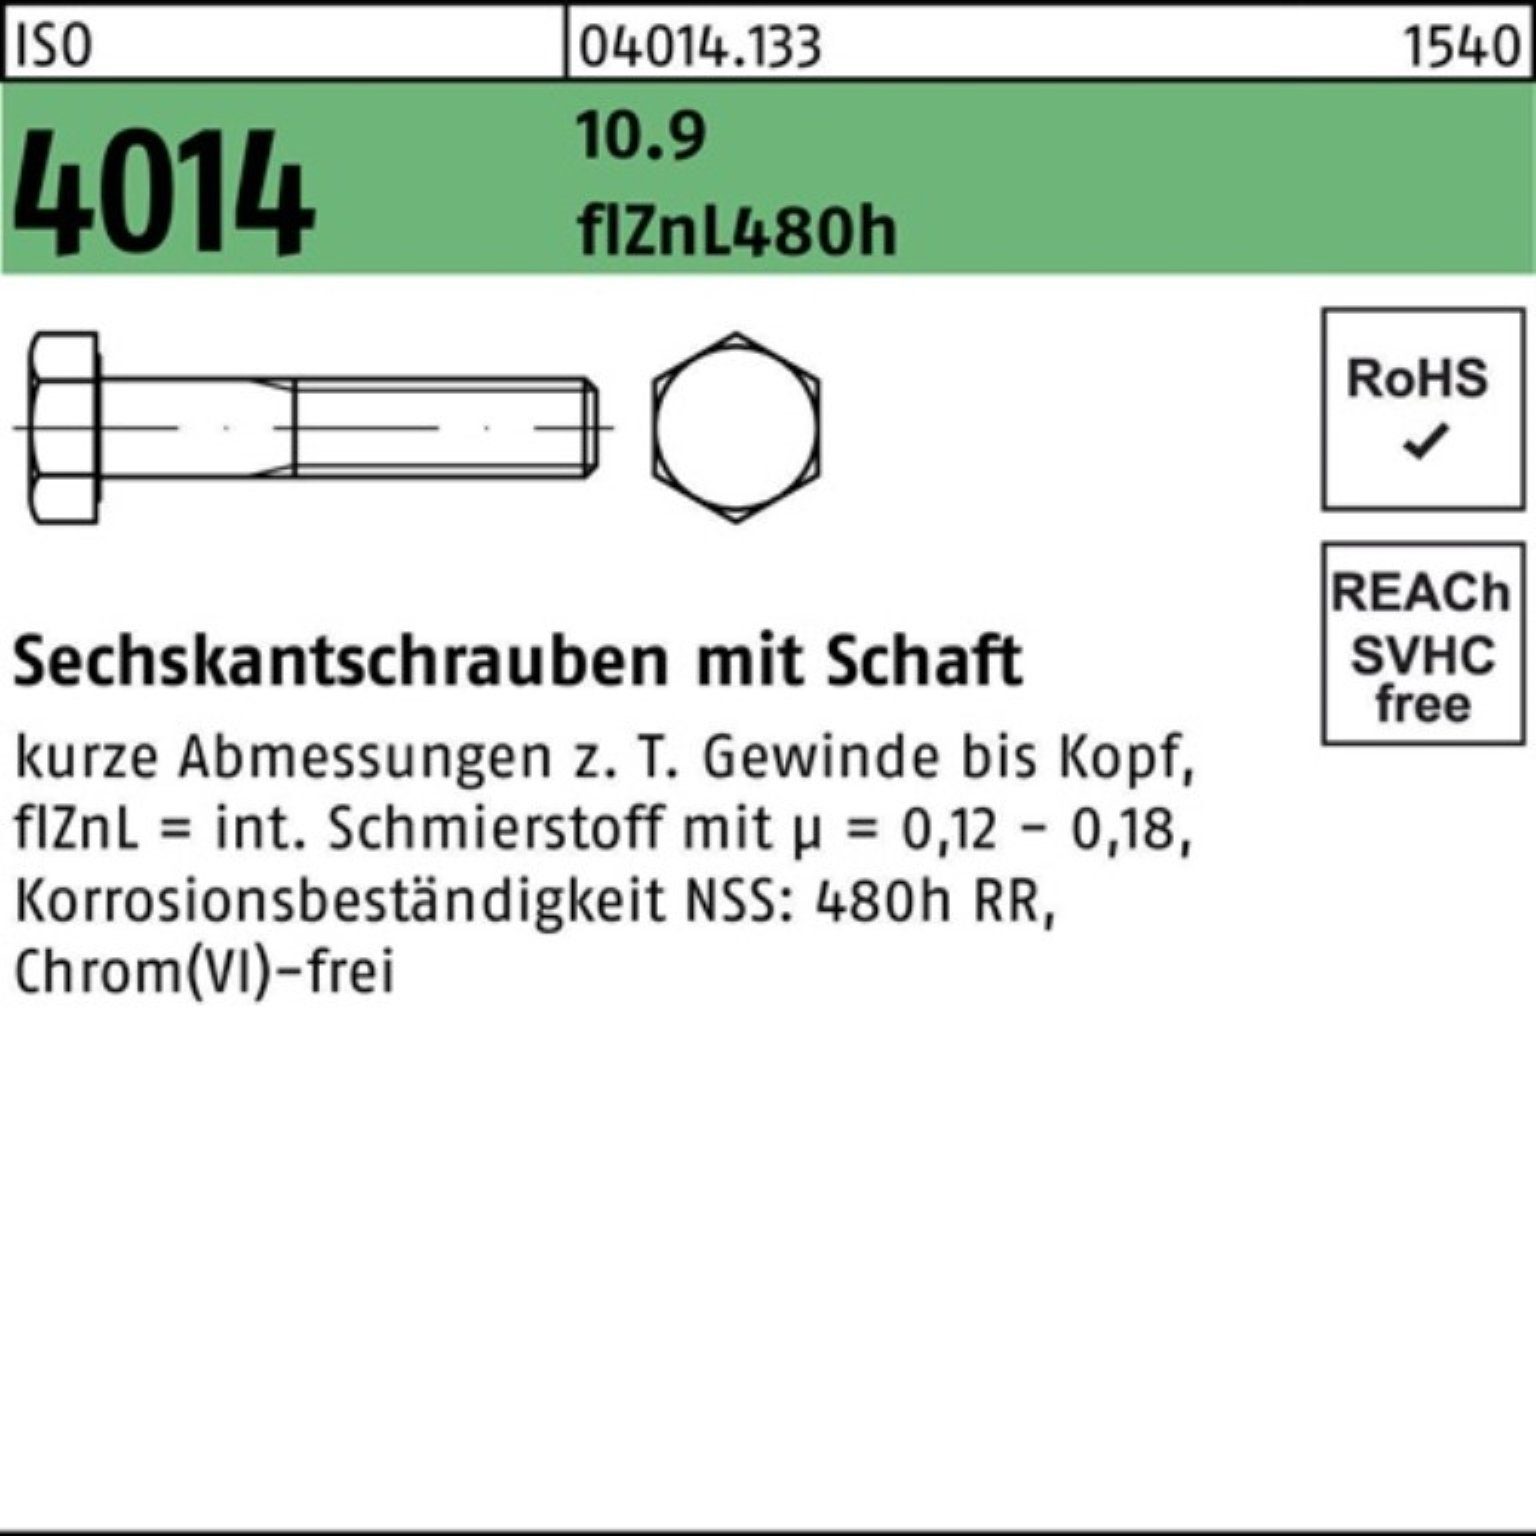 Bufab Sechskantschraube 100er Sechskantschraube M10x 4014 Pack zinklamellen Schaft 10.9 75 ISO